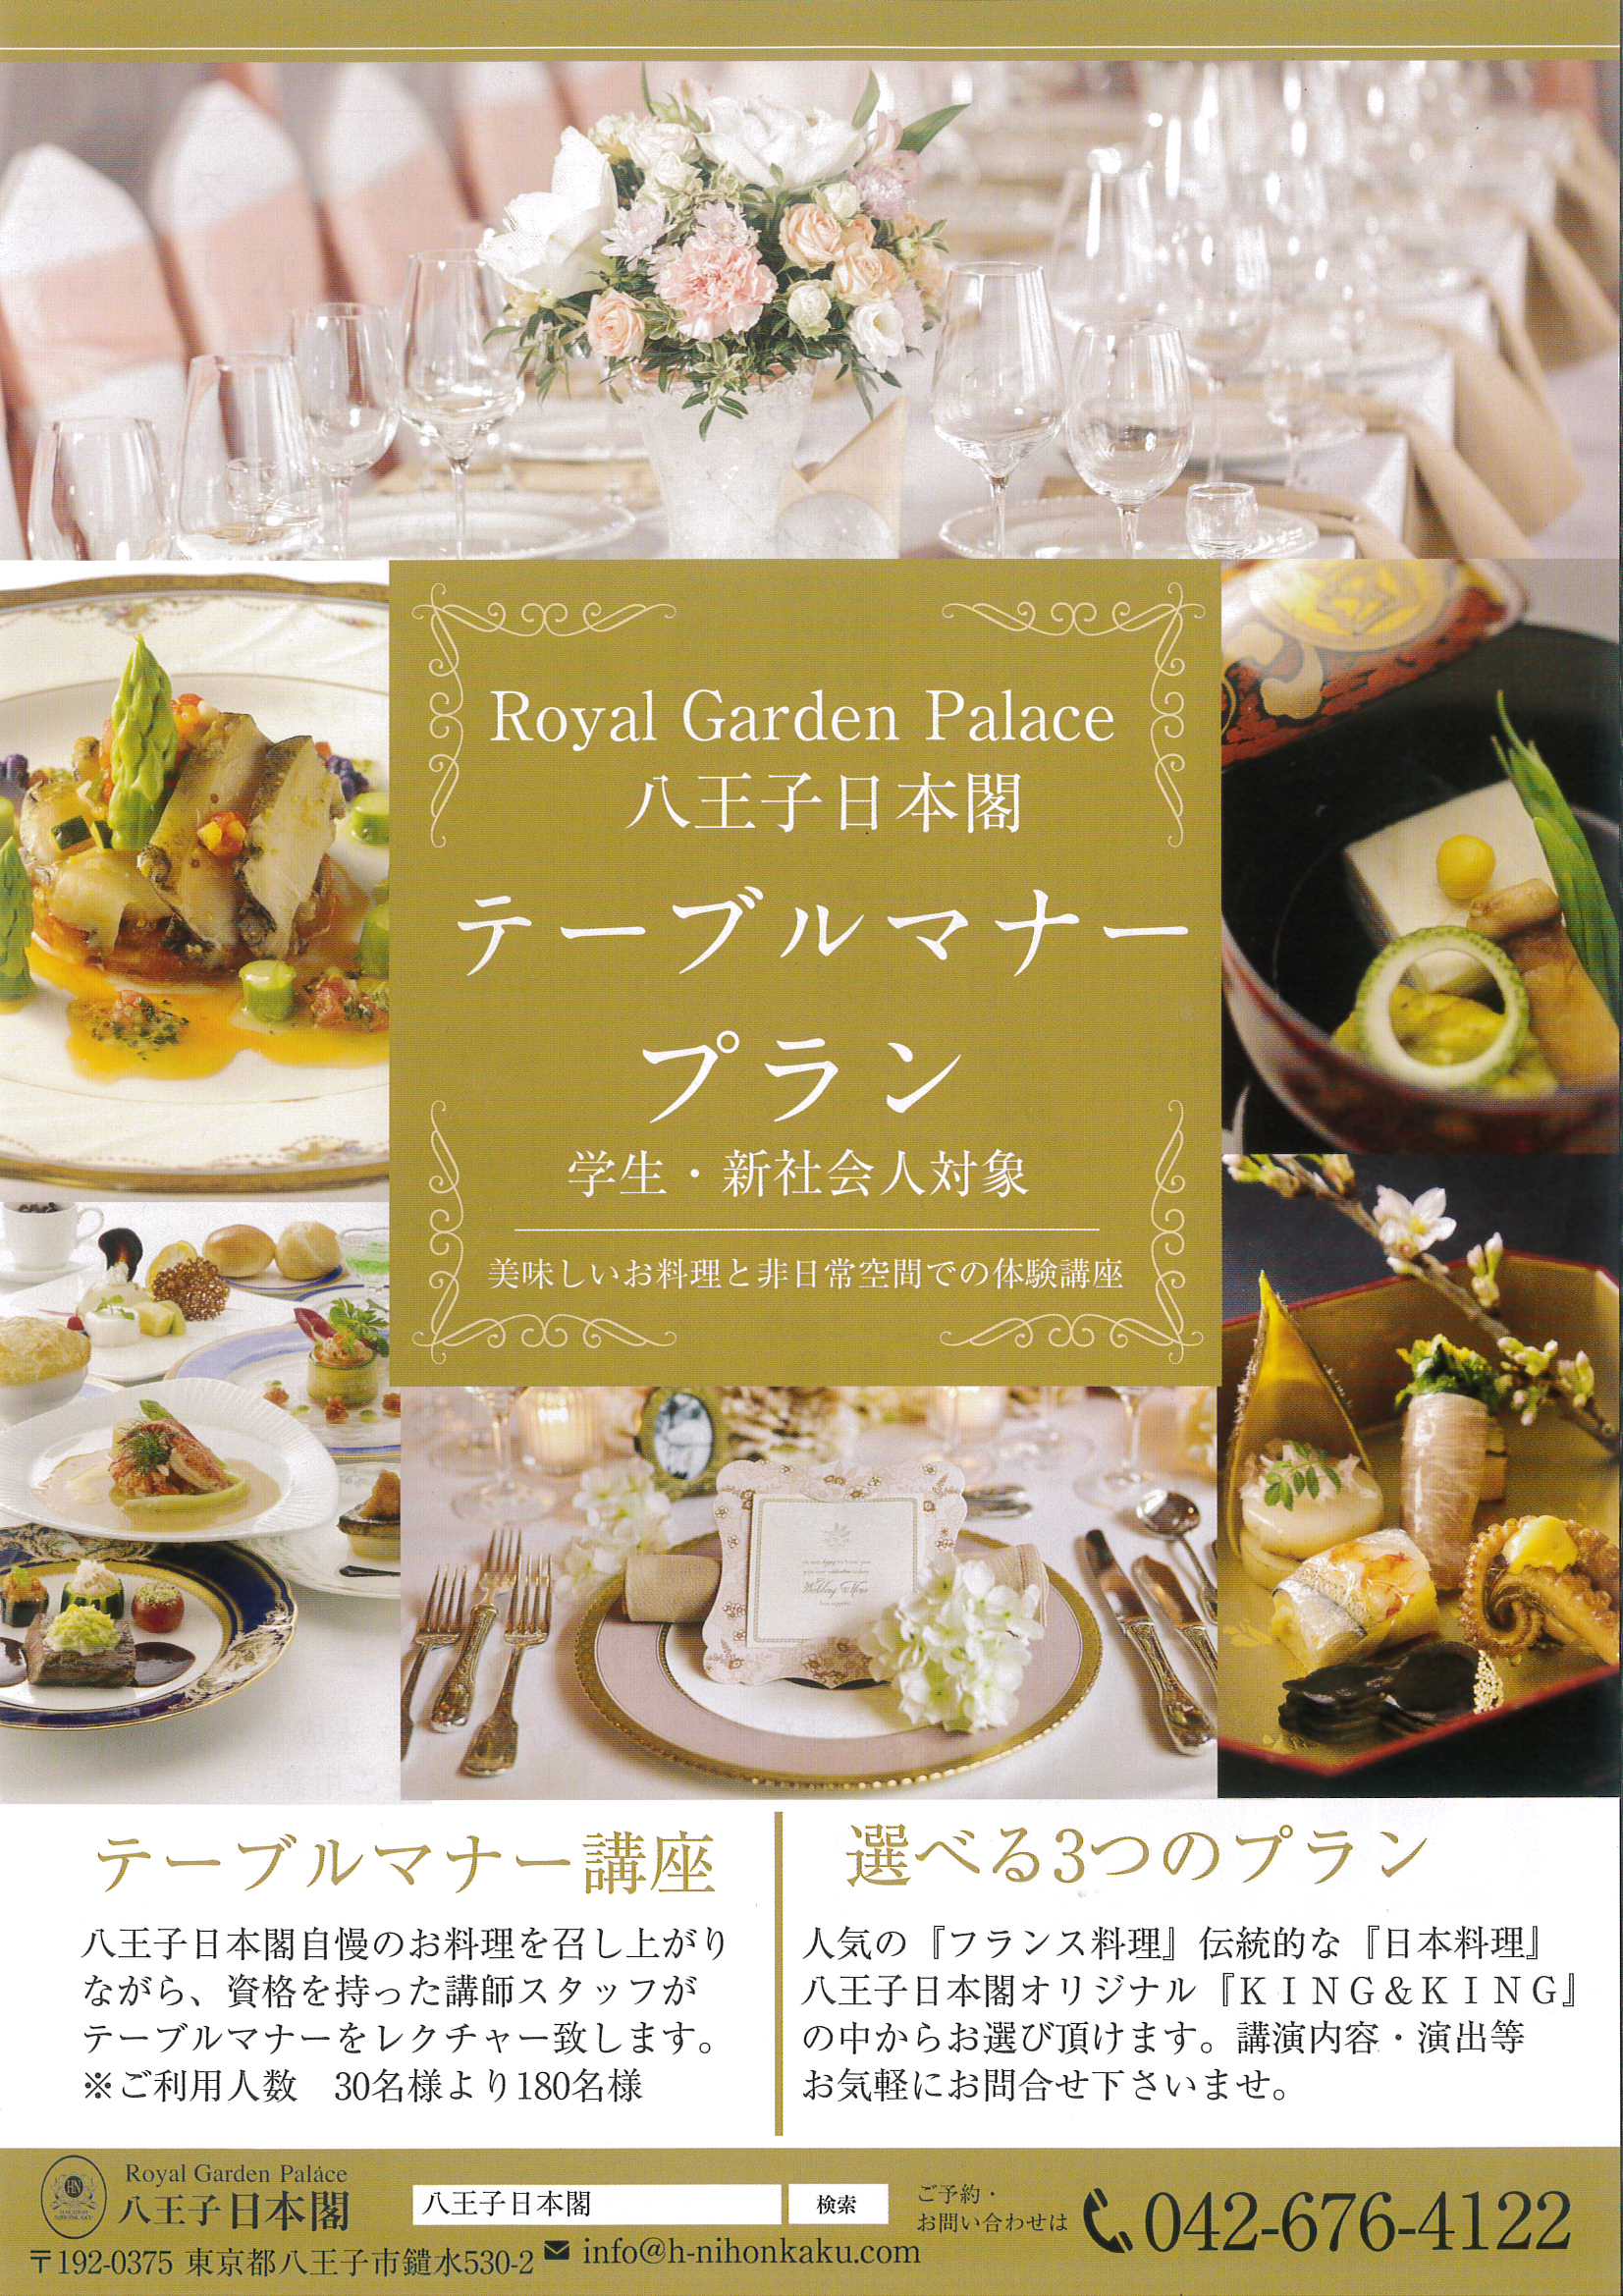 学生 新社会人対象 テーブルマナープラン 八王子日本閣 レストラン 宴席